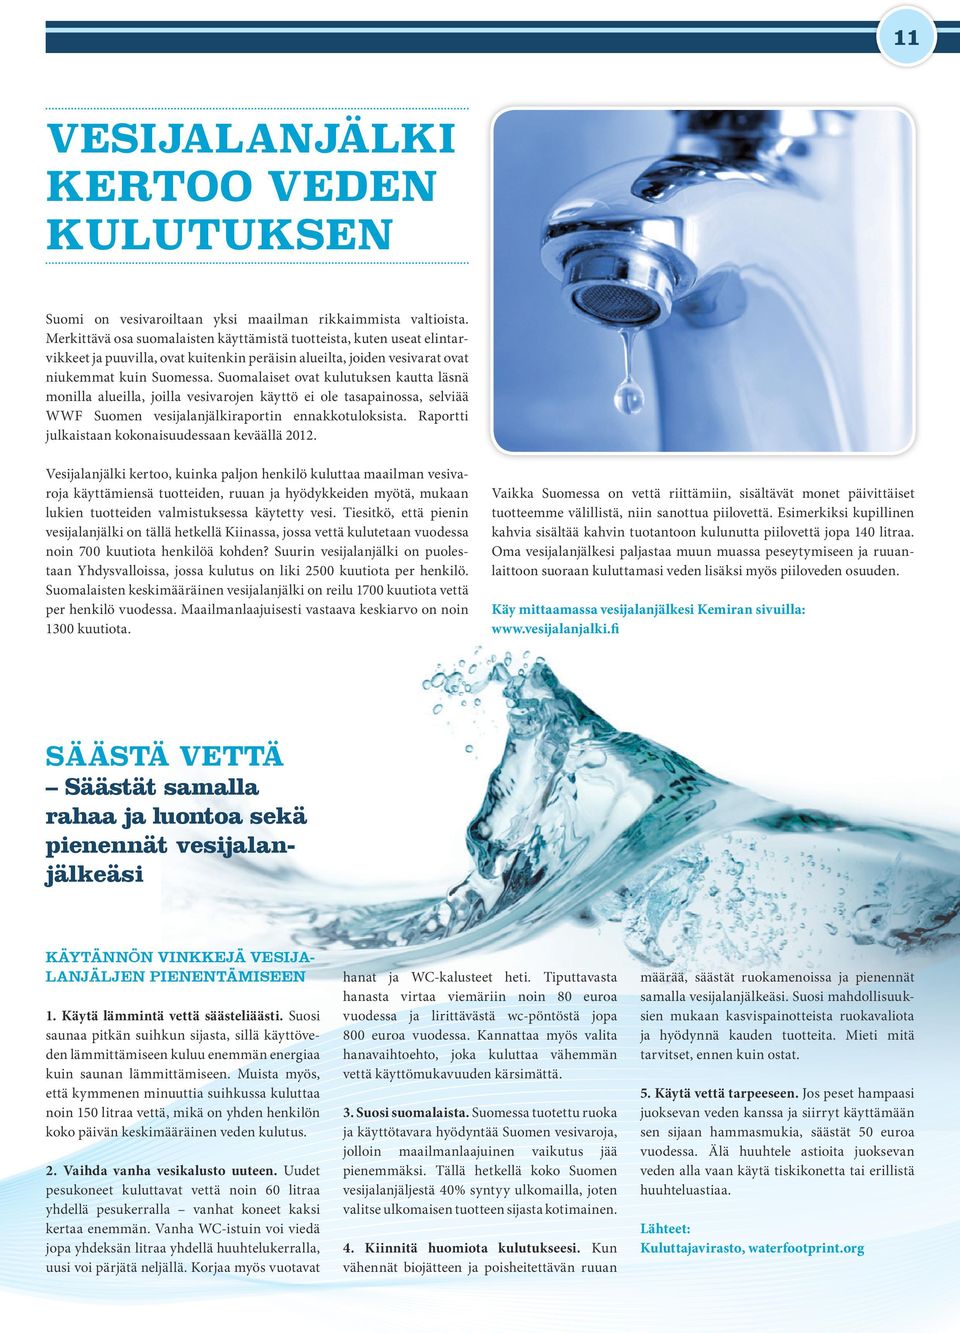 Suomalaiset ovat kulutuksen kautta läsnä monilla alueilla, joilla vesivarojen käyttö ei ole tasapainossa, selviää WWF Suomen vesijalanjälkiraportin ennakkotuloksista.